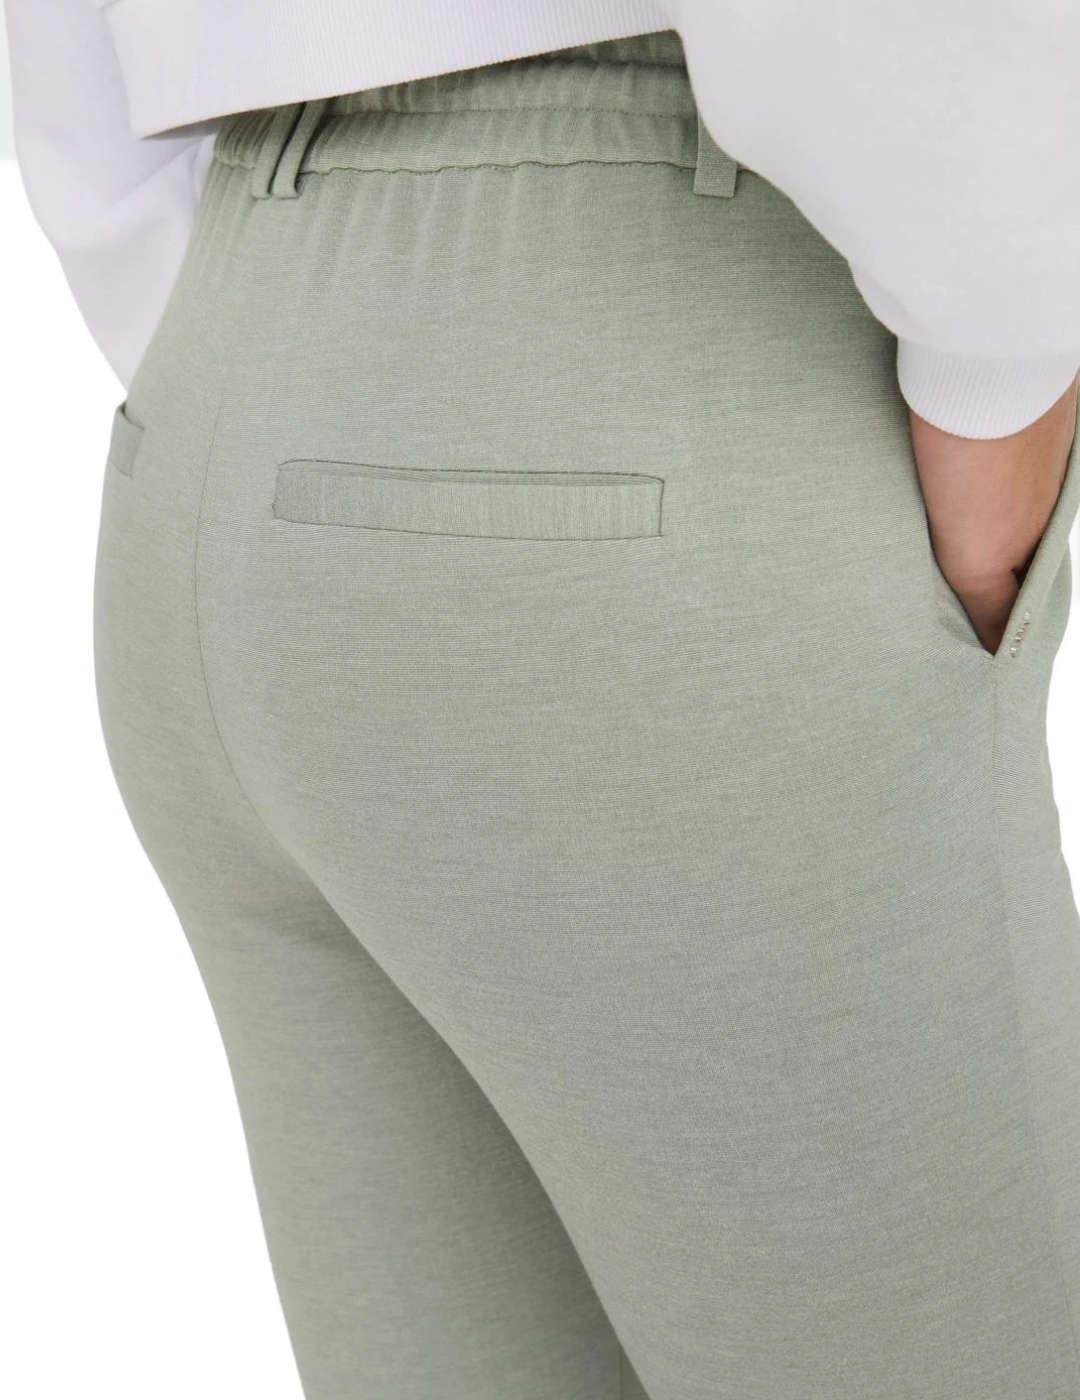 Pantalón Only Potrash verde de tela Slim para mujer